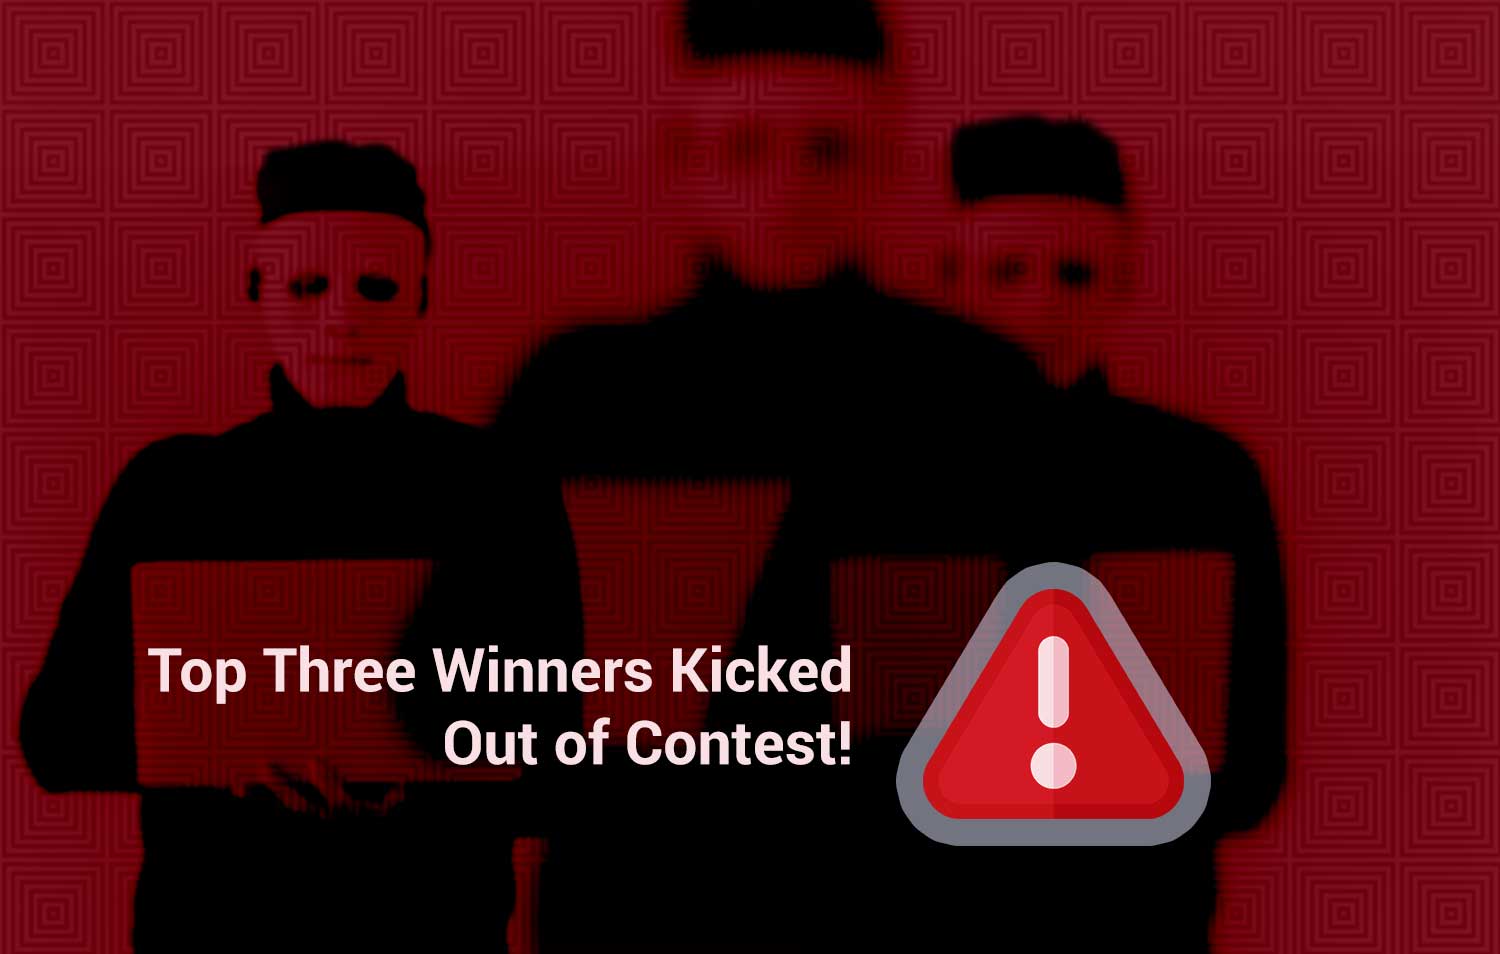 Los tres primeros ganadores son expulsados del concurso